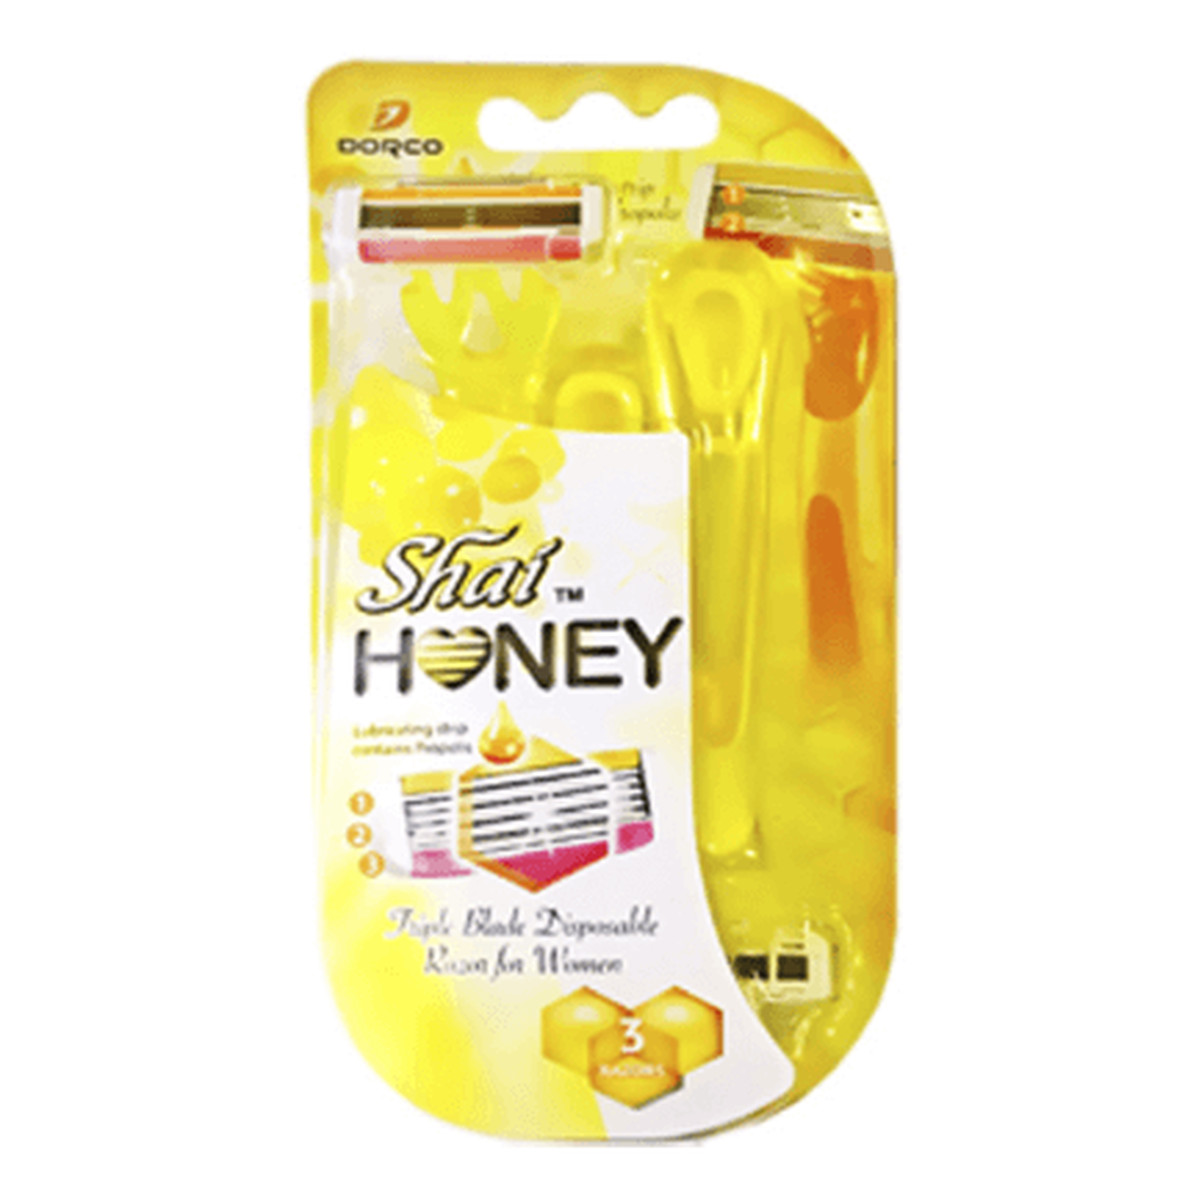 Dorco Shai 3 Honey Maszynka jednorazowa damska 3 ostrza